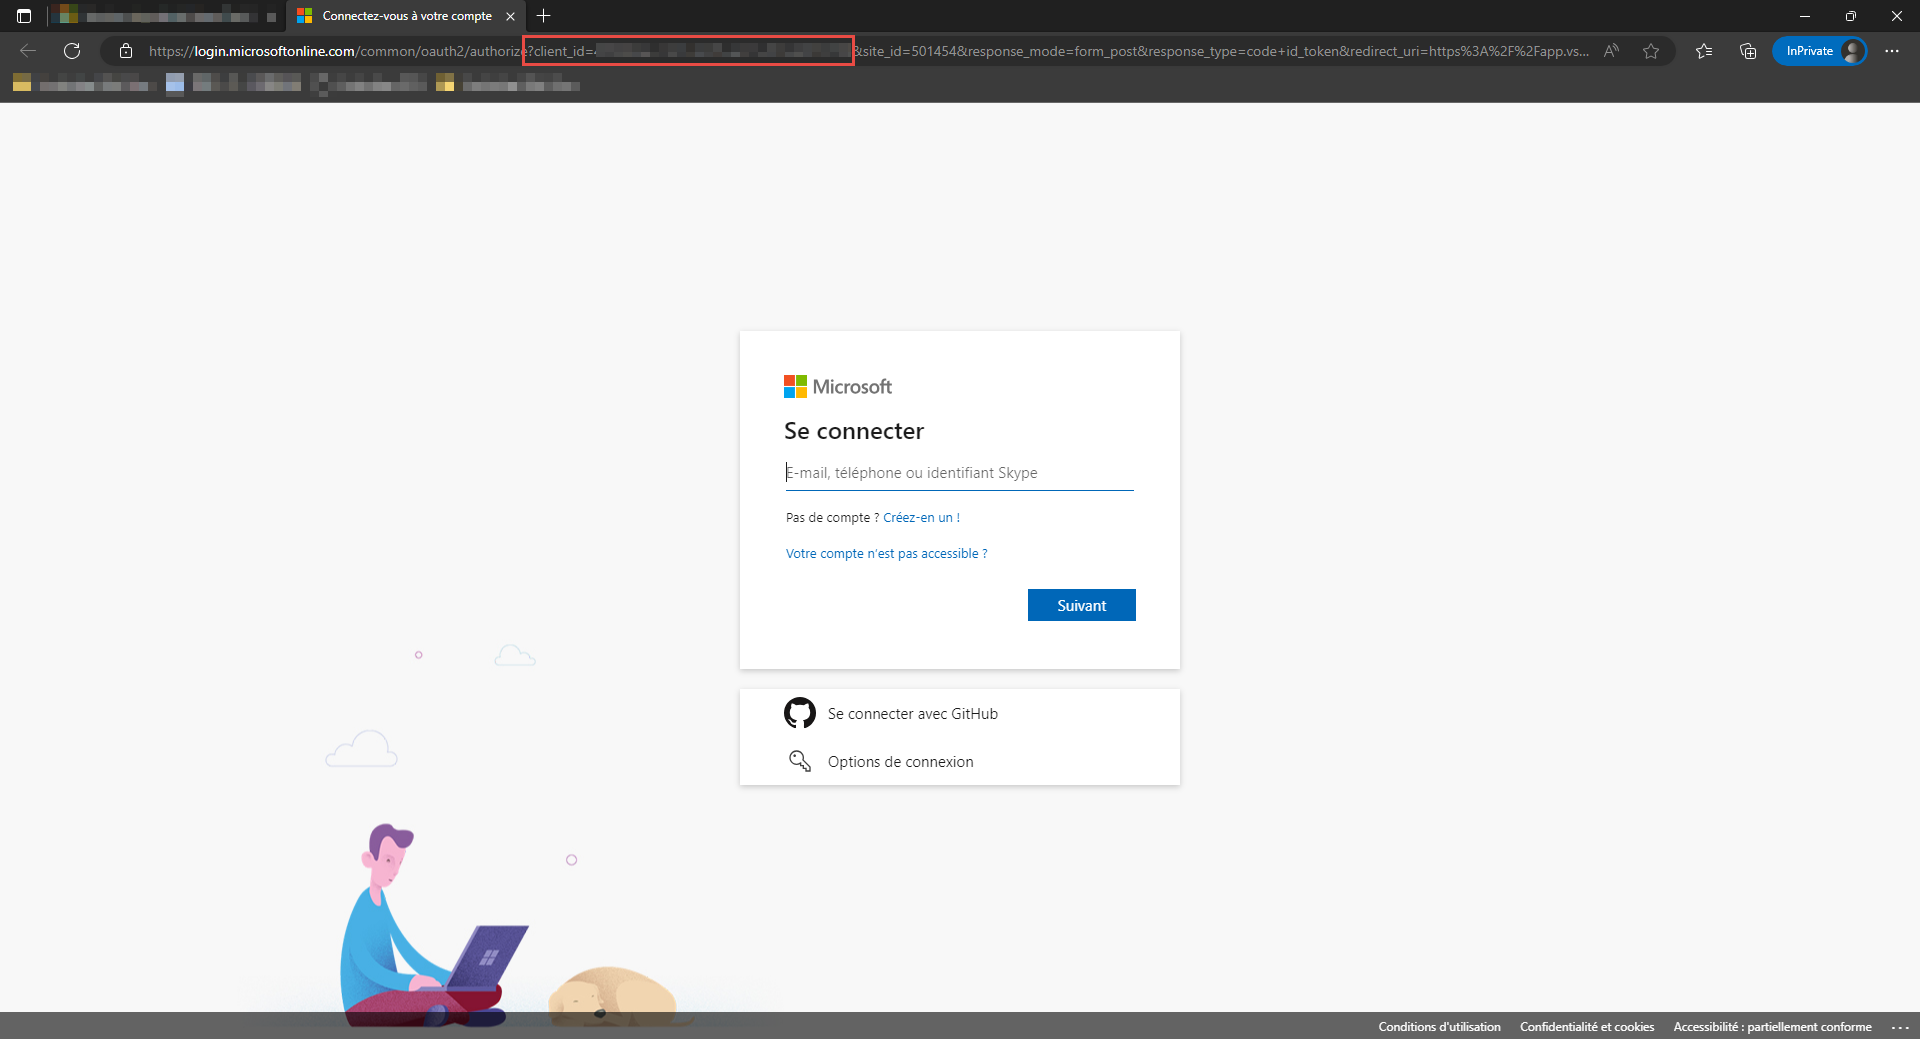 Capture d’écran d’une page de connexion Azure DevOps d’organisation, avec le paramètre client_id dans l’URL mis en surbrillance.